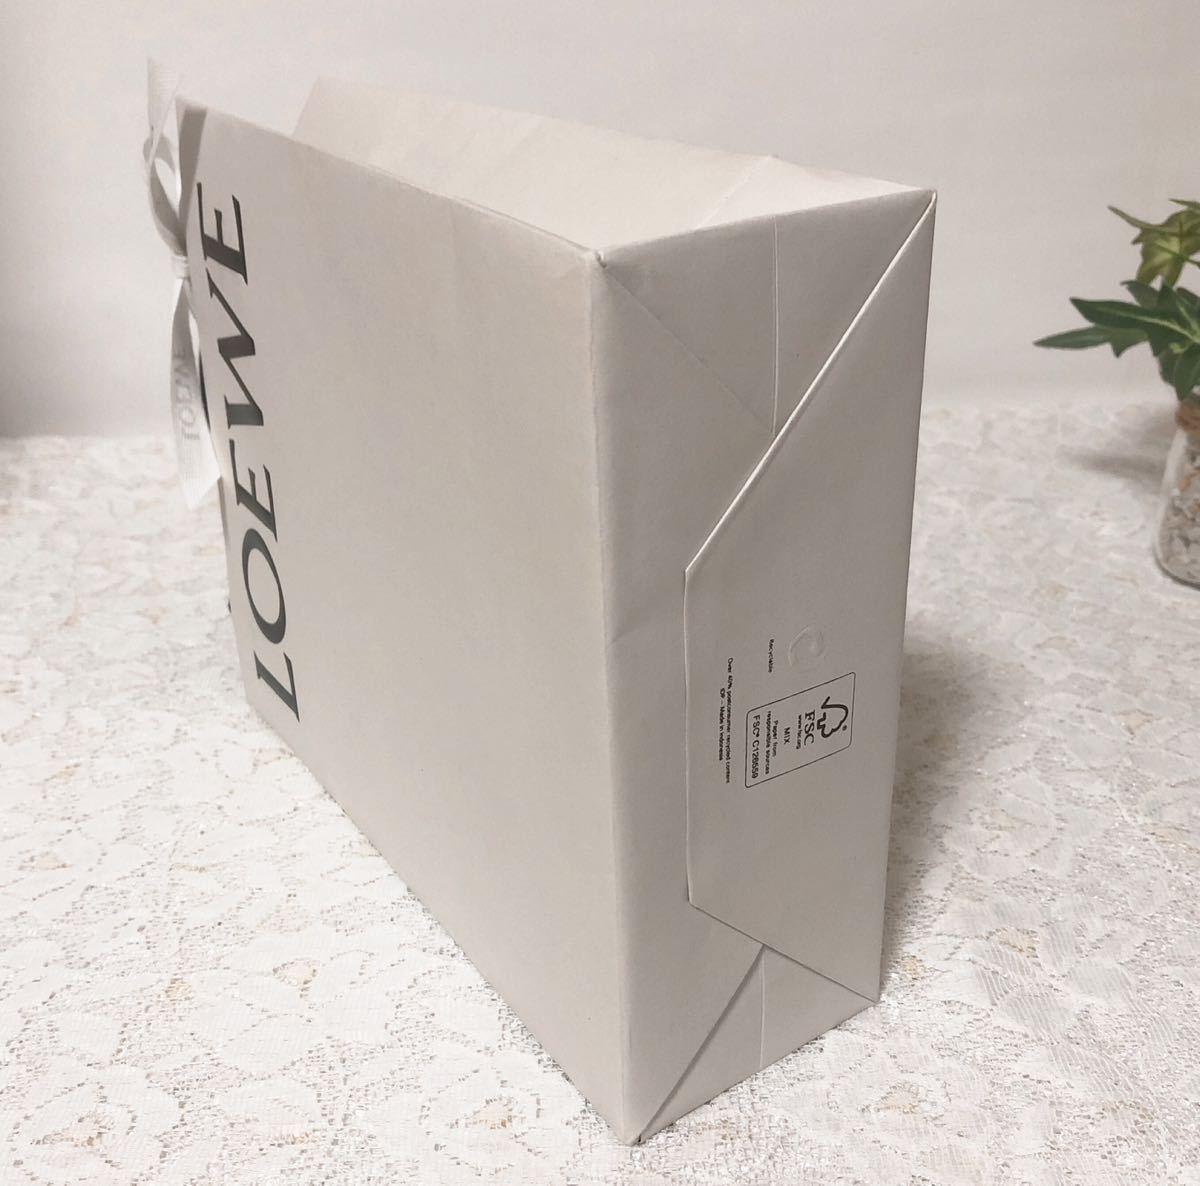 ロエベ「LOEWE」ショッパー ミニ封筒付き(2973) 正規品 付属品 紙袋 ショップ袋 ブランド紙袋 18×22×7cm グレー 小物箱サイズ